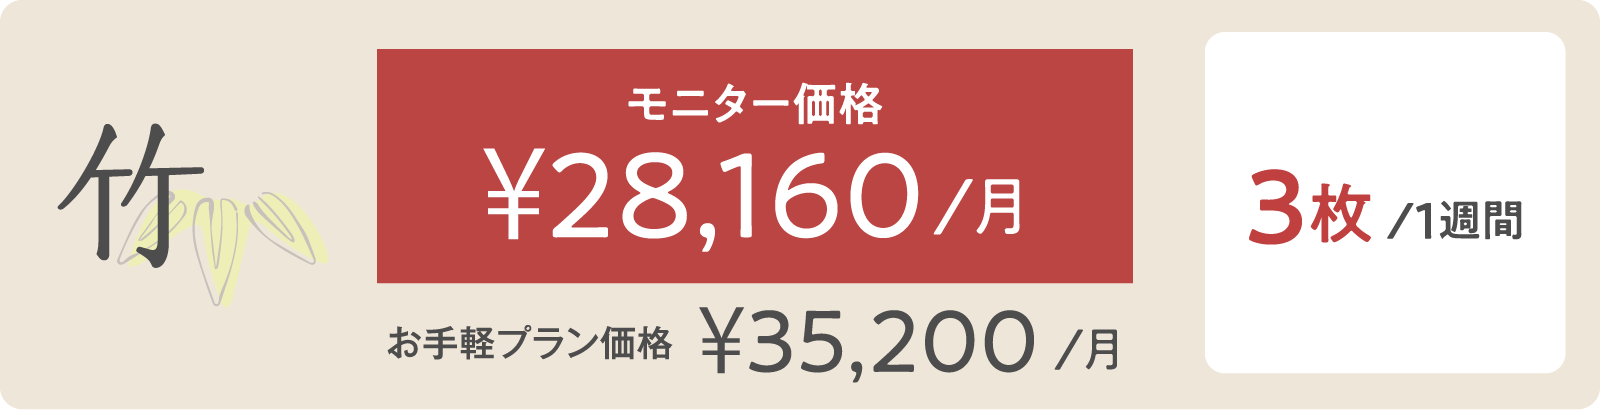 松モニター価格 ¥28,160/月 5枚/１週間